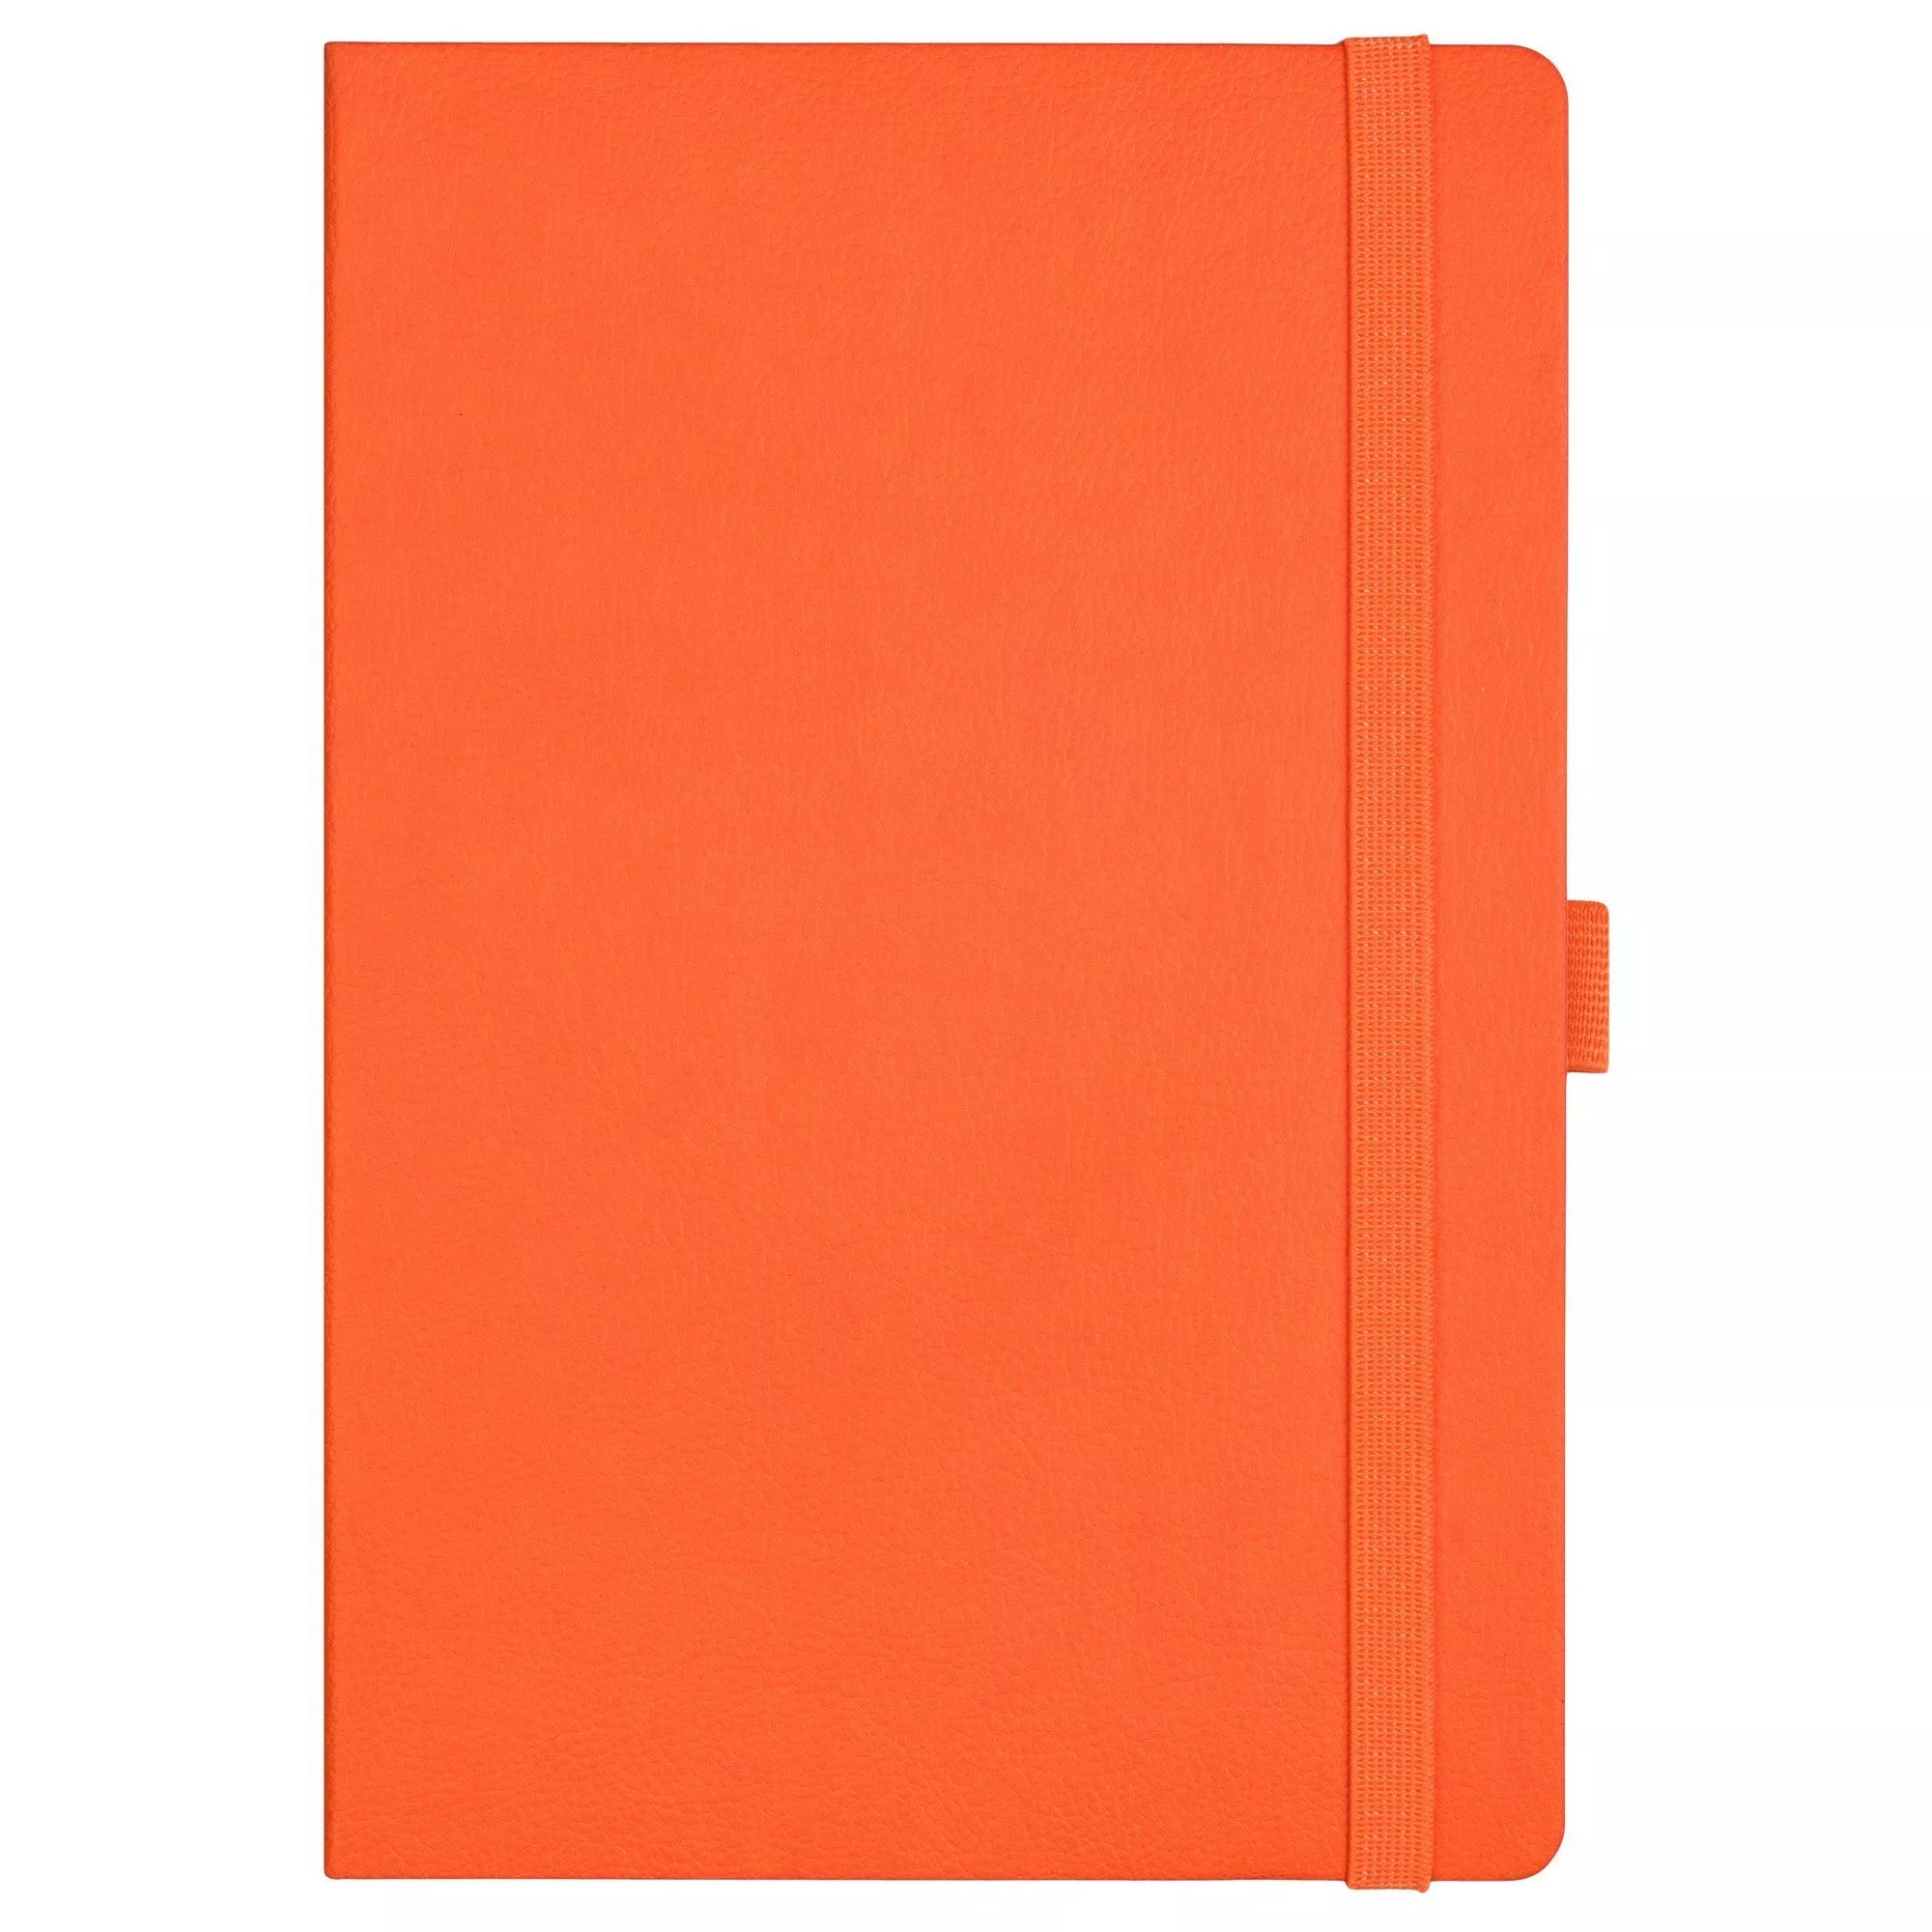 Ежедневник недатированный, Portobello Trend, Chameleon , жесткая обложка, 145х210, 256 стр, оранжевый/белый